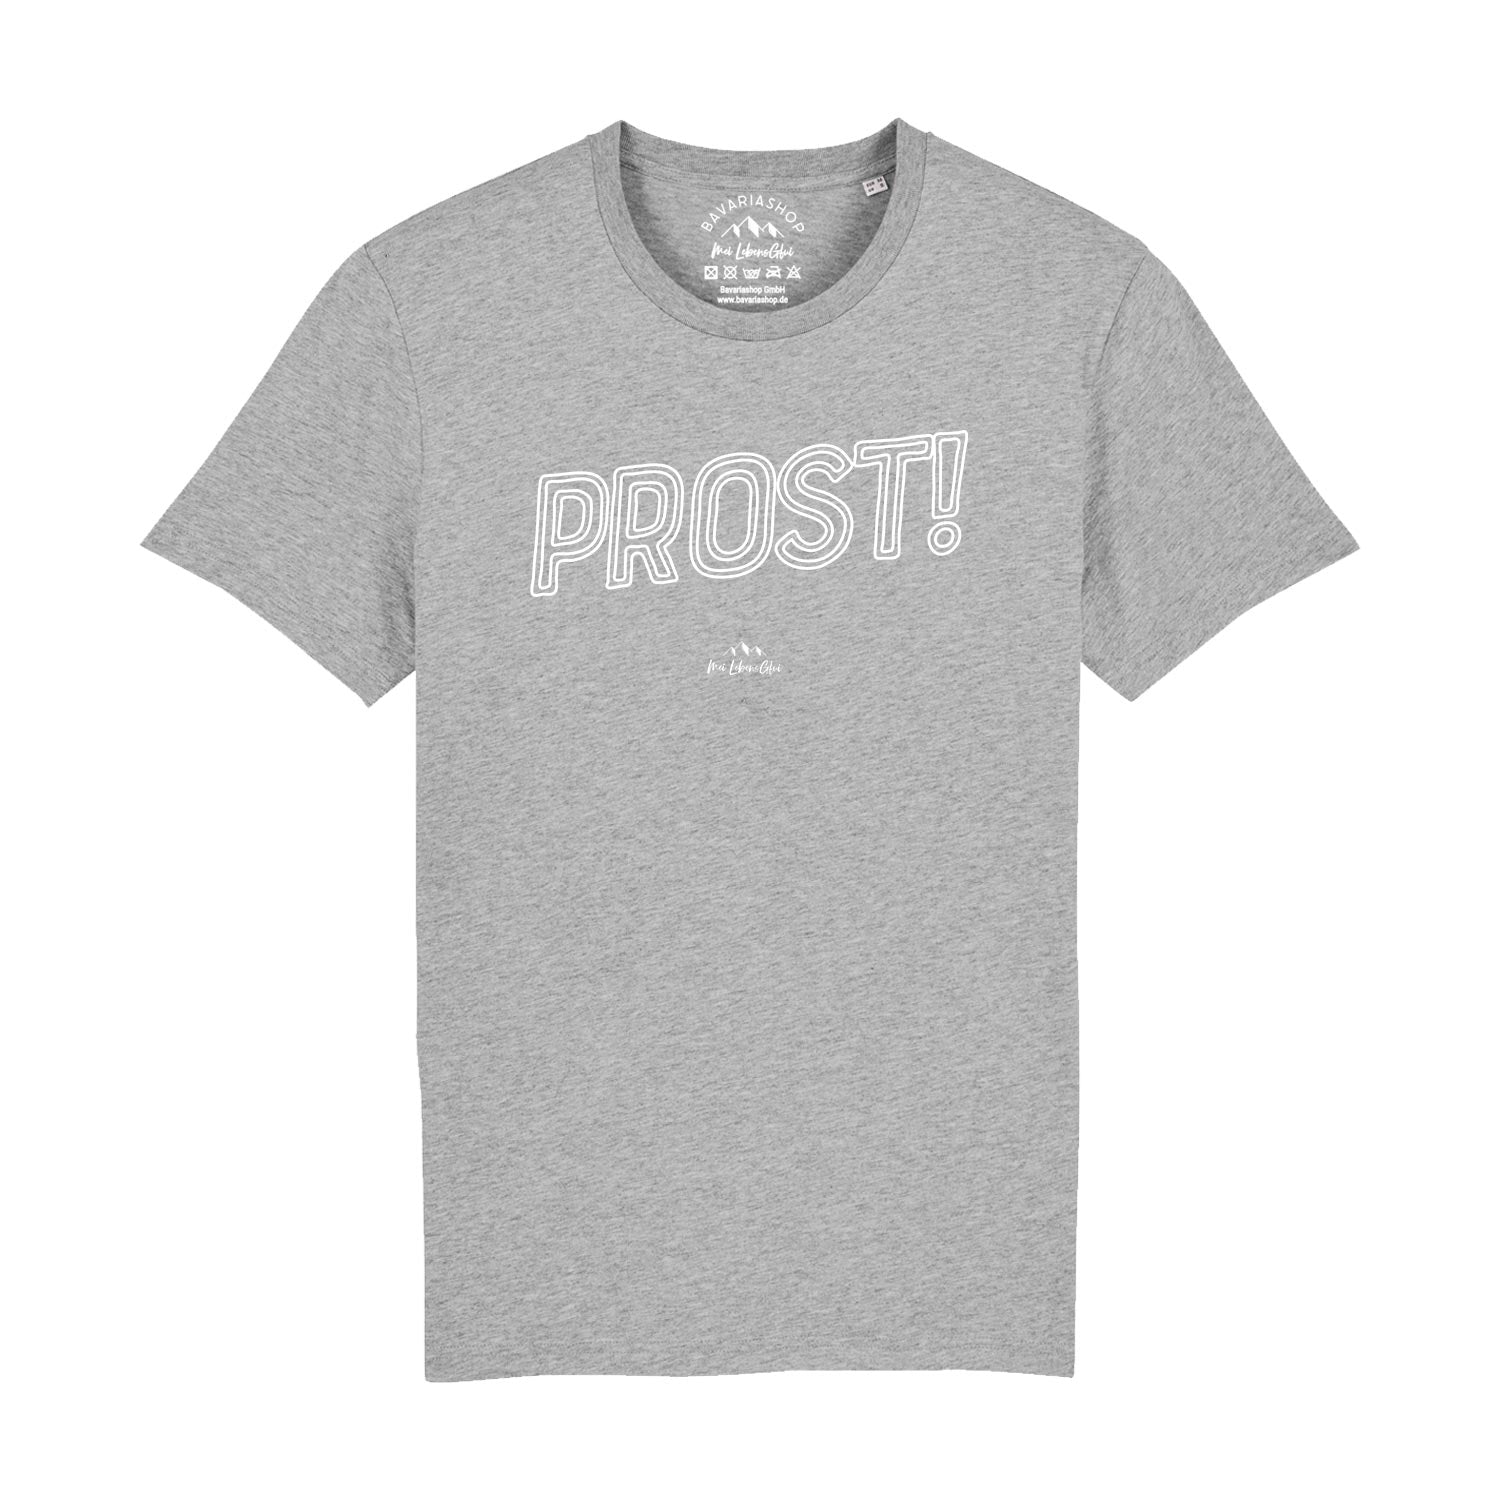 Herren T-Shirt "Prost!"